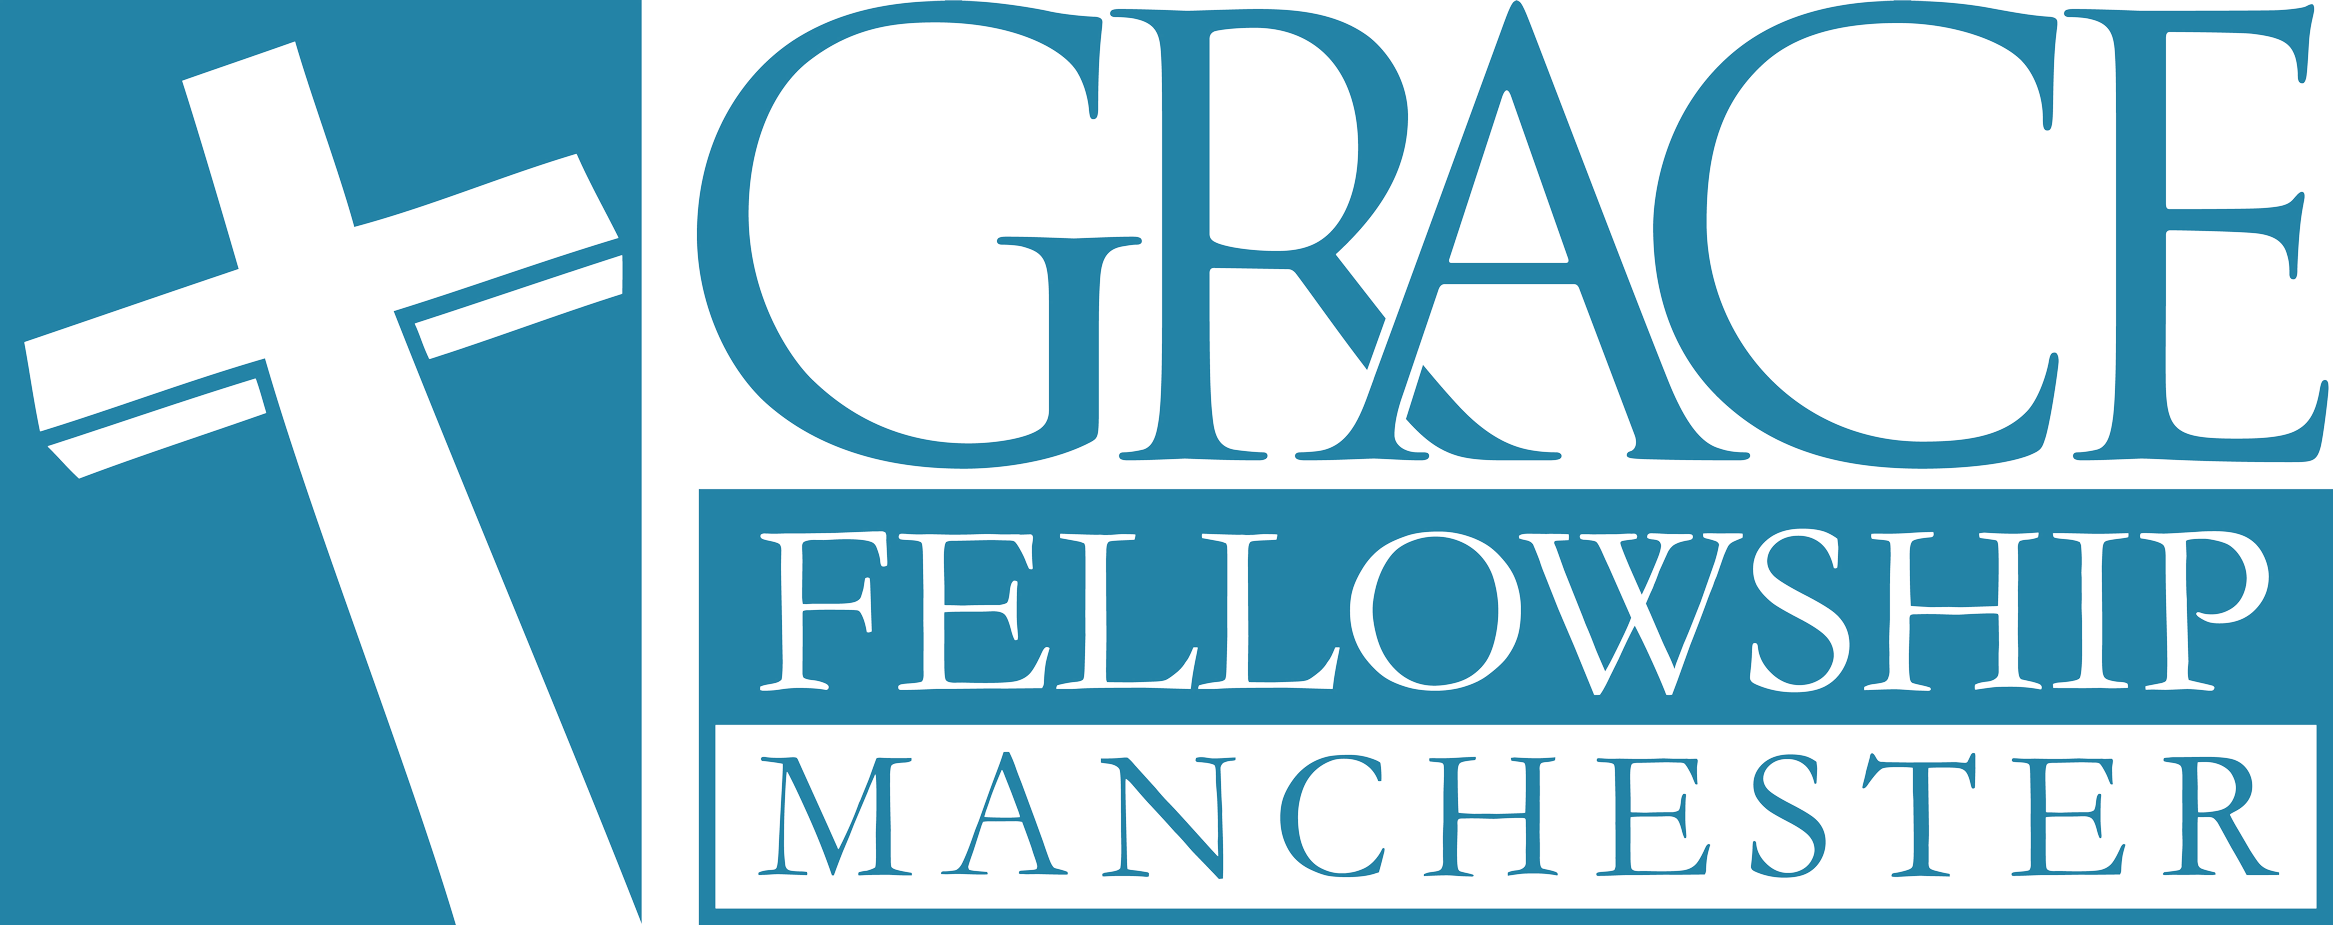 Grace Fellowship Manchester